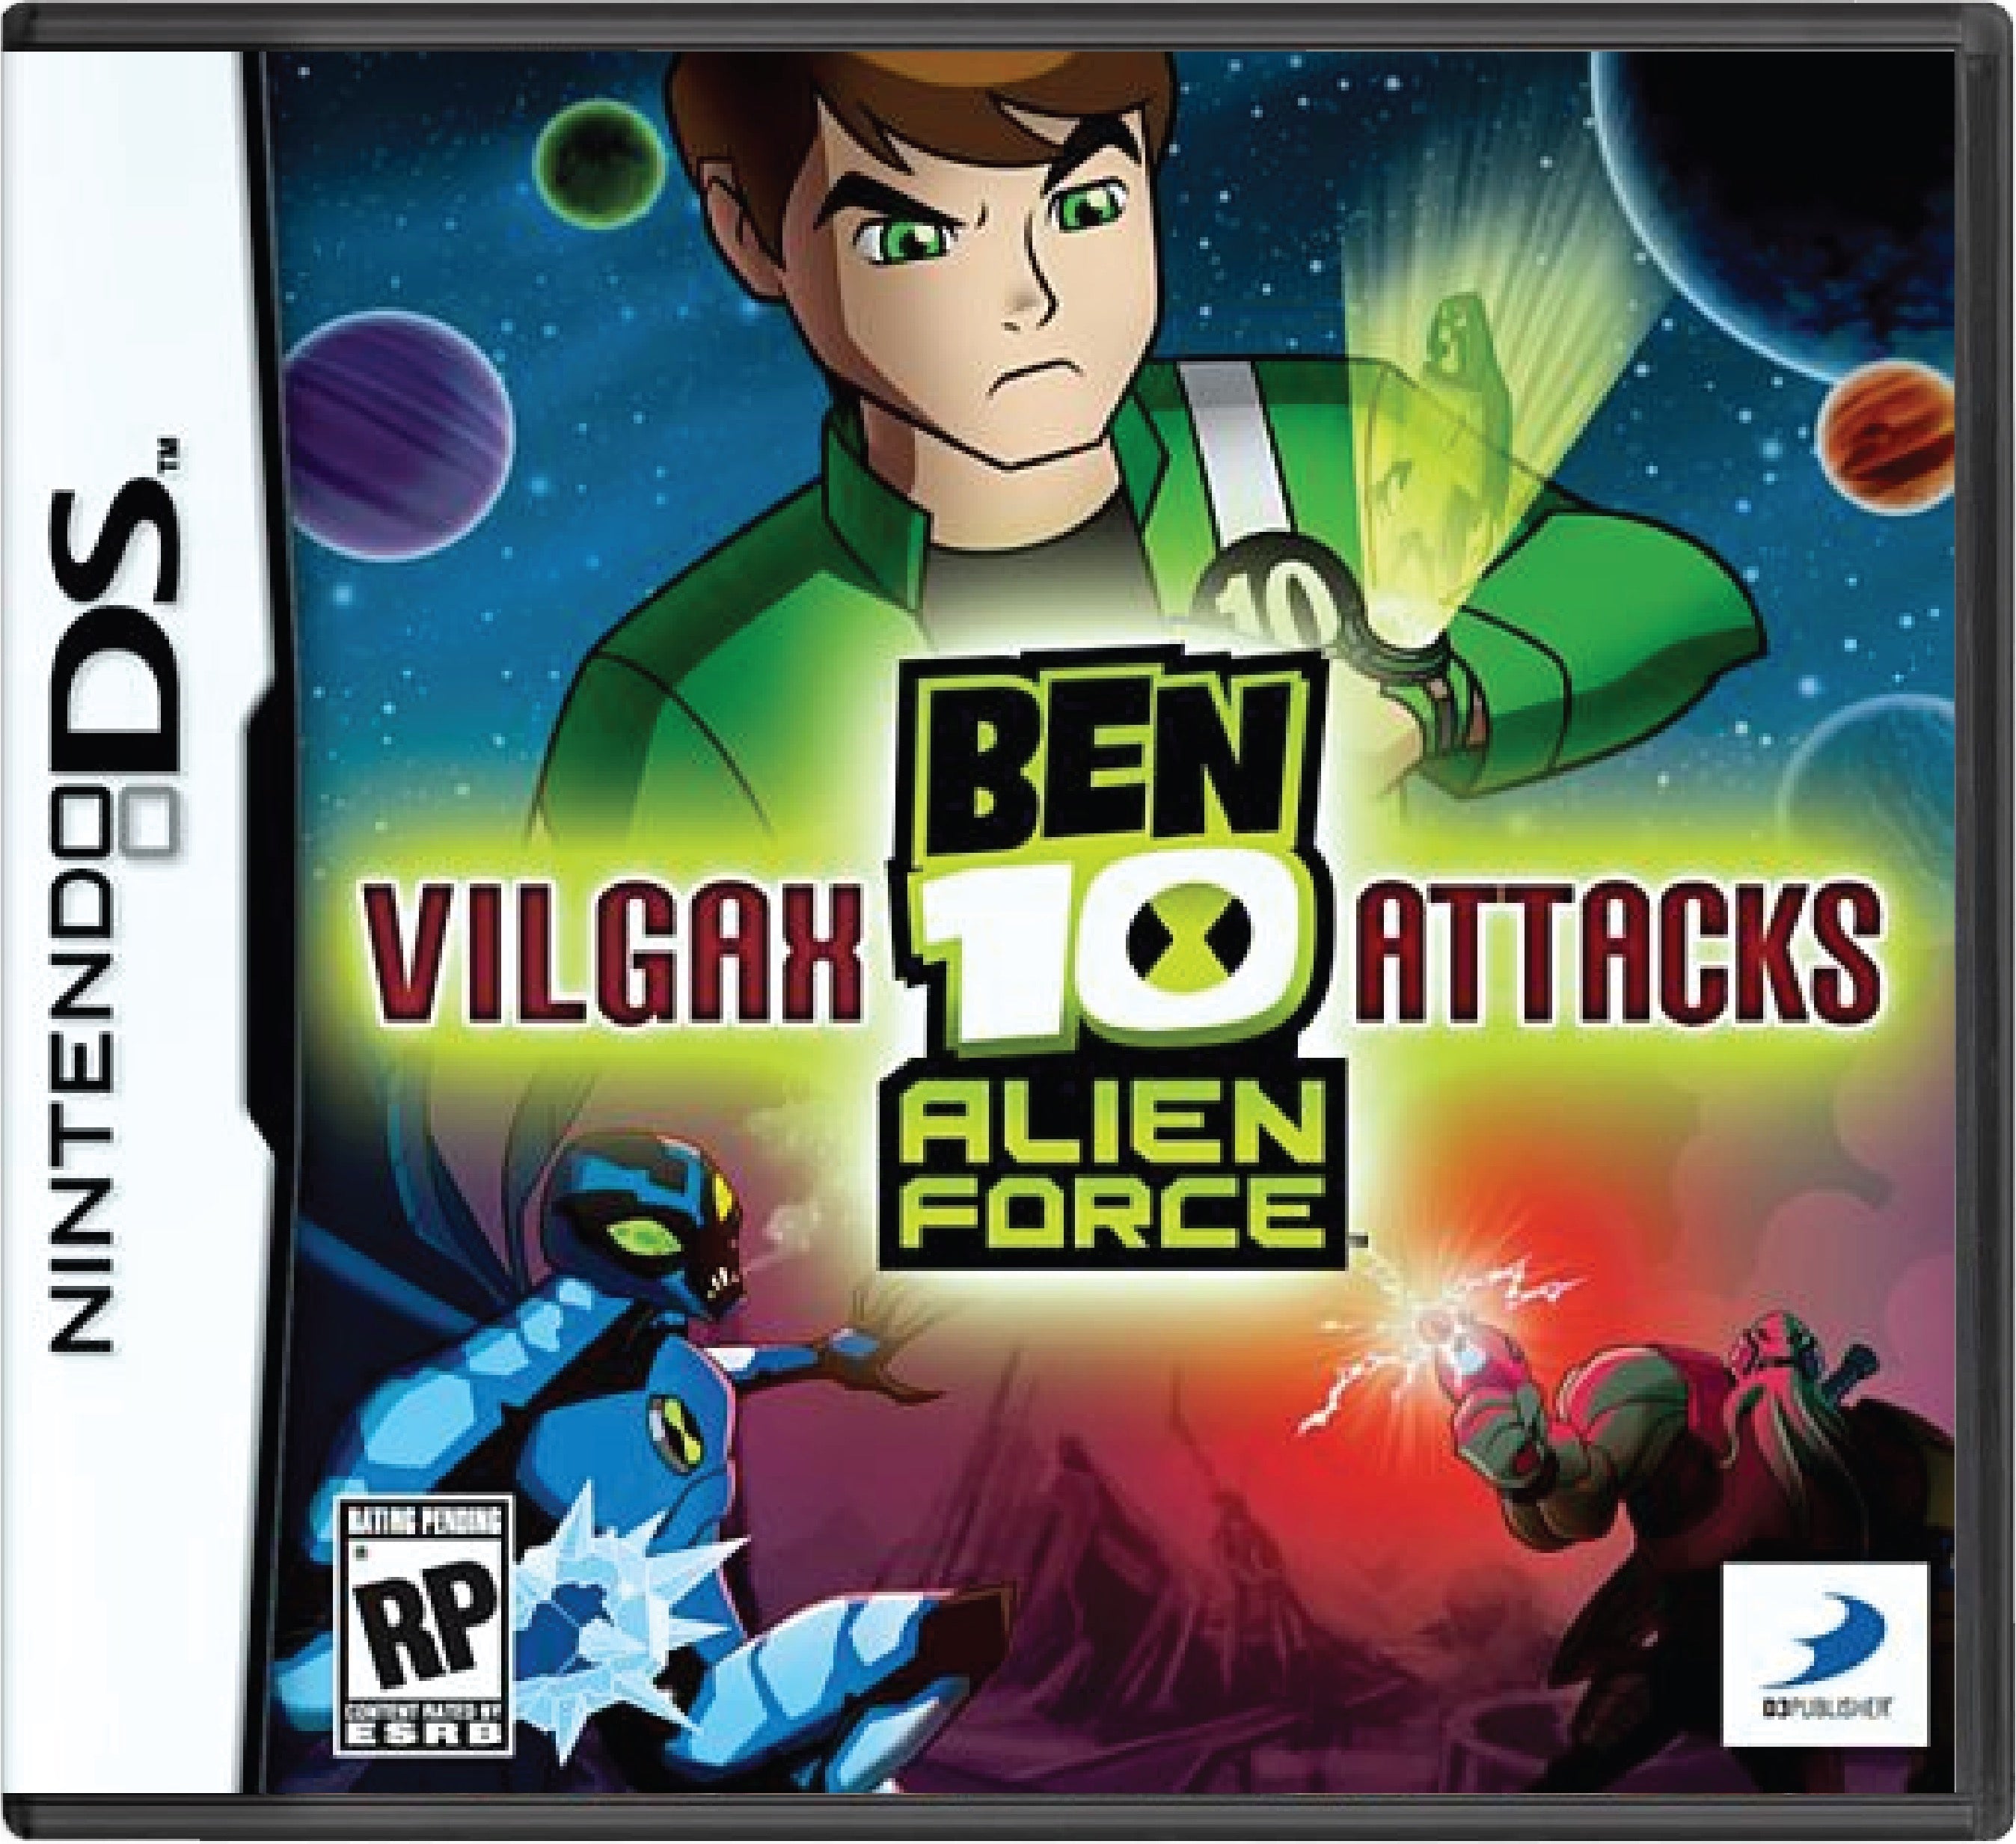 Ben 10 Alien Force Vilgax Attacks Cover Art